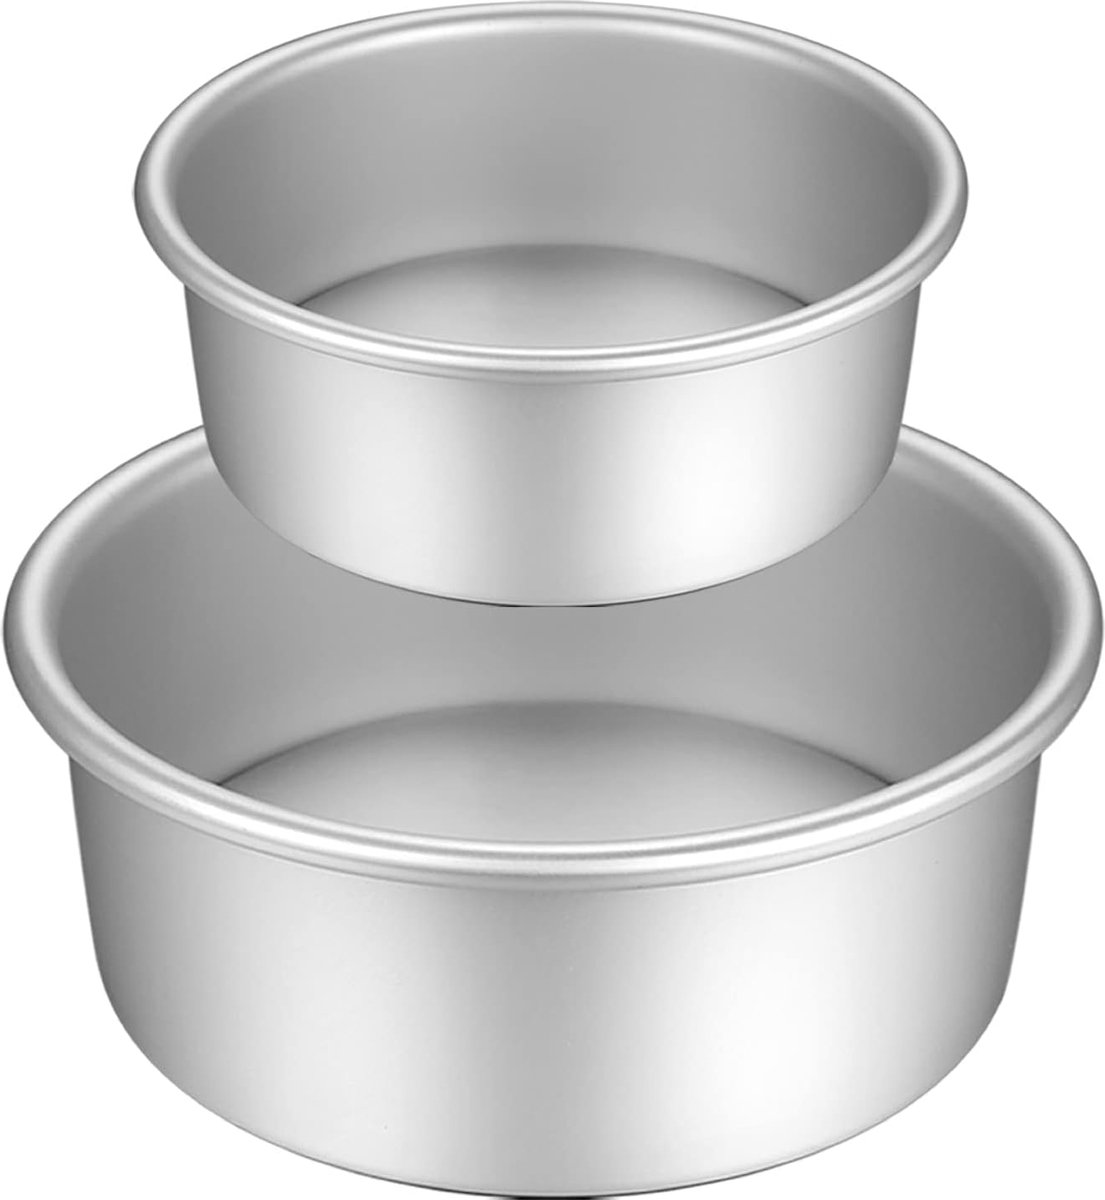 Ronde taartvormenset van geanodiseerd aluminium met antiaanbaklaag, met verwijderbare bodem, 2 maten (6 inch/7 inch)